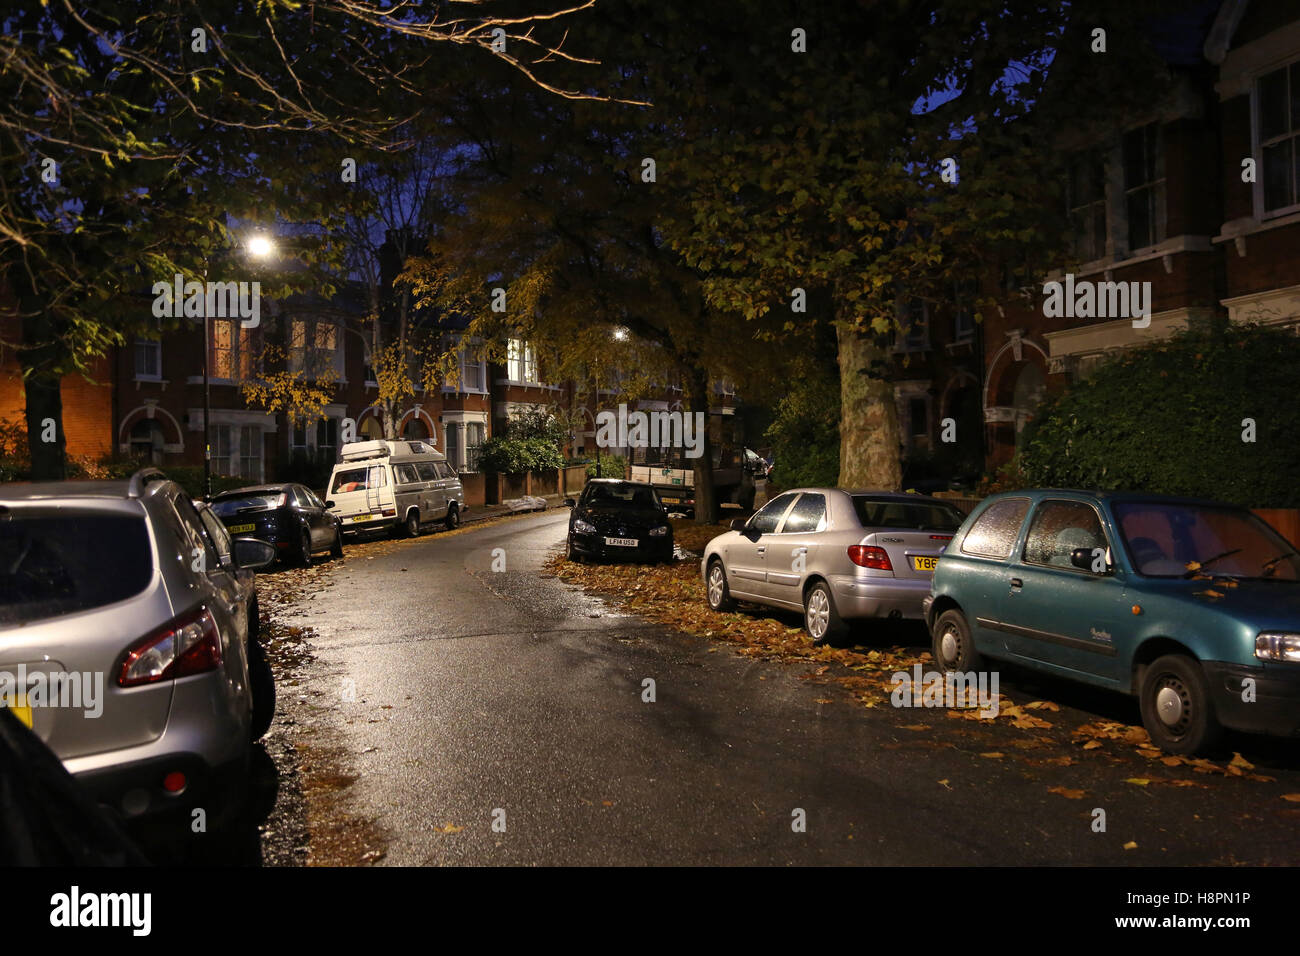 Herbst Blätter bedecken die Bürgersteige und Straßen in einer typischen Süd-London-Straße nach Einbruch der Dunkelheit auf eine nasse Nacht Stockfoto